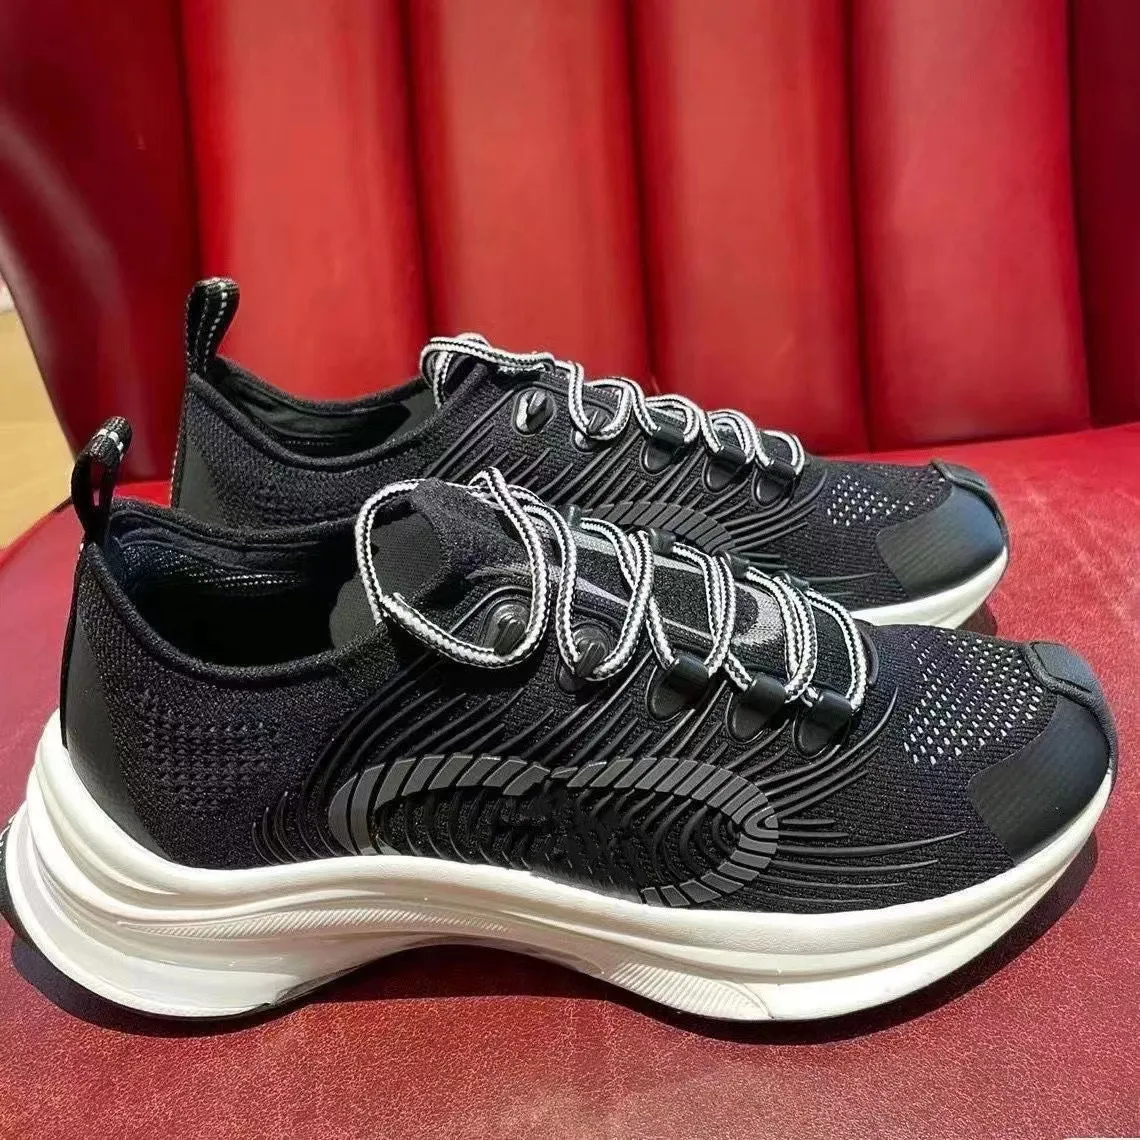 Tênis RUN feminino de luxo Sapatos de malha técnica pretos Detalhes de borracha Interlocking Trainer com cadarço 01